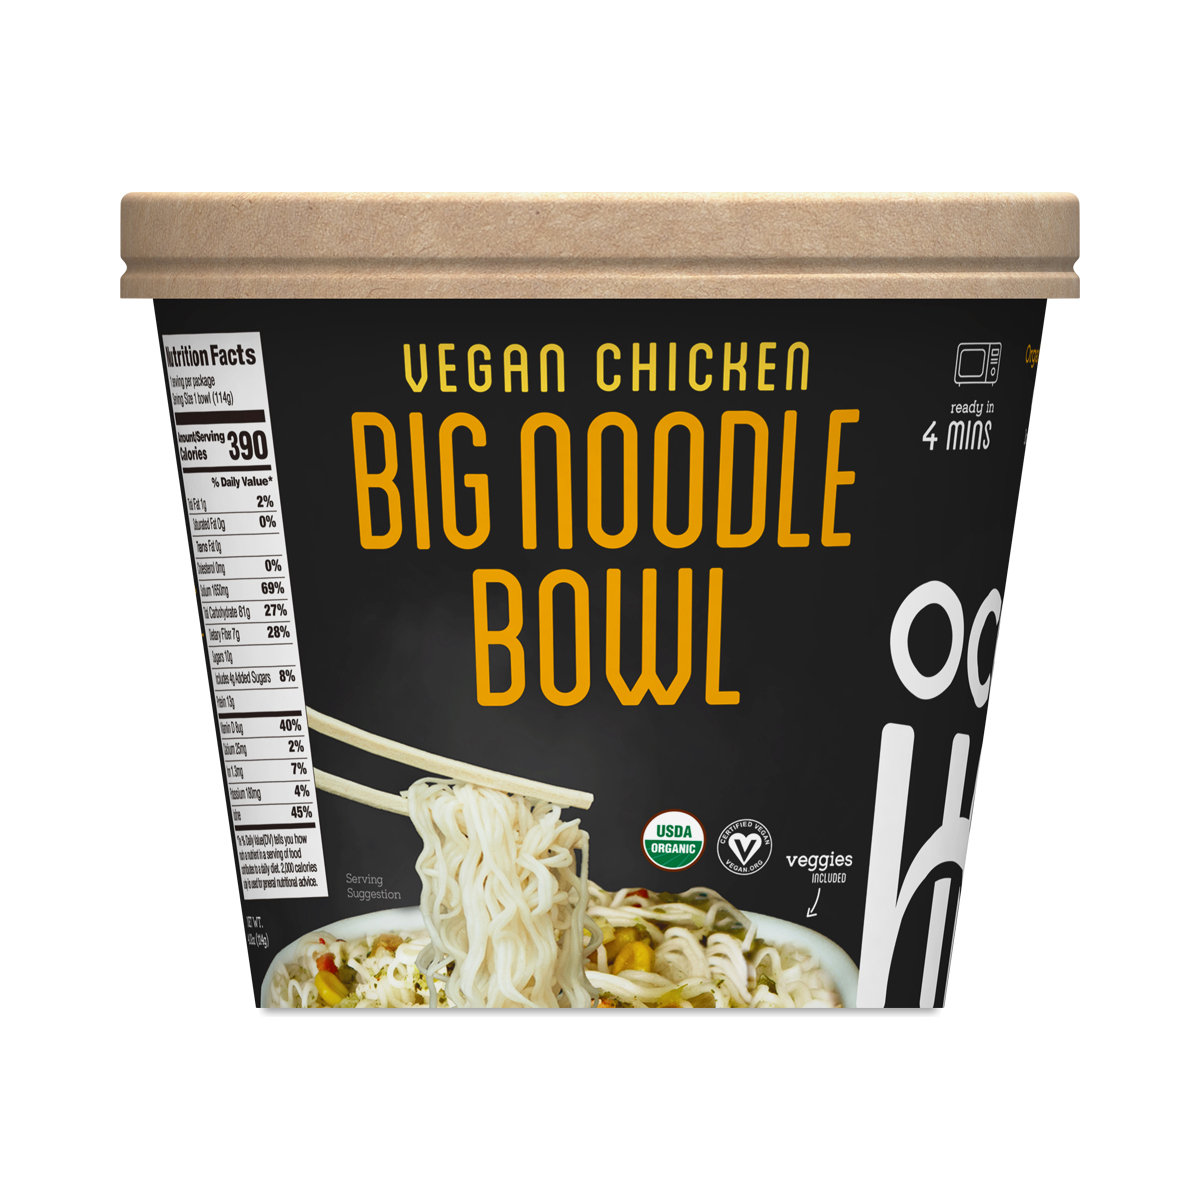 Ocean's Halo Big Noodle Bowl, Vegan Chicken 4.02 oz bowl